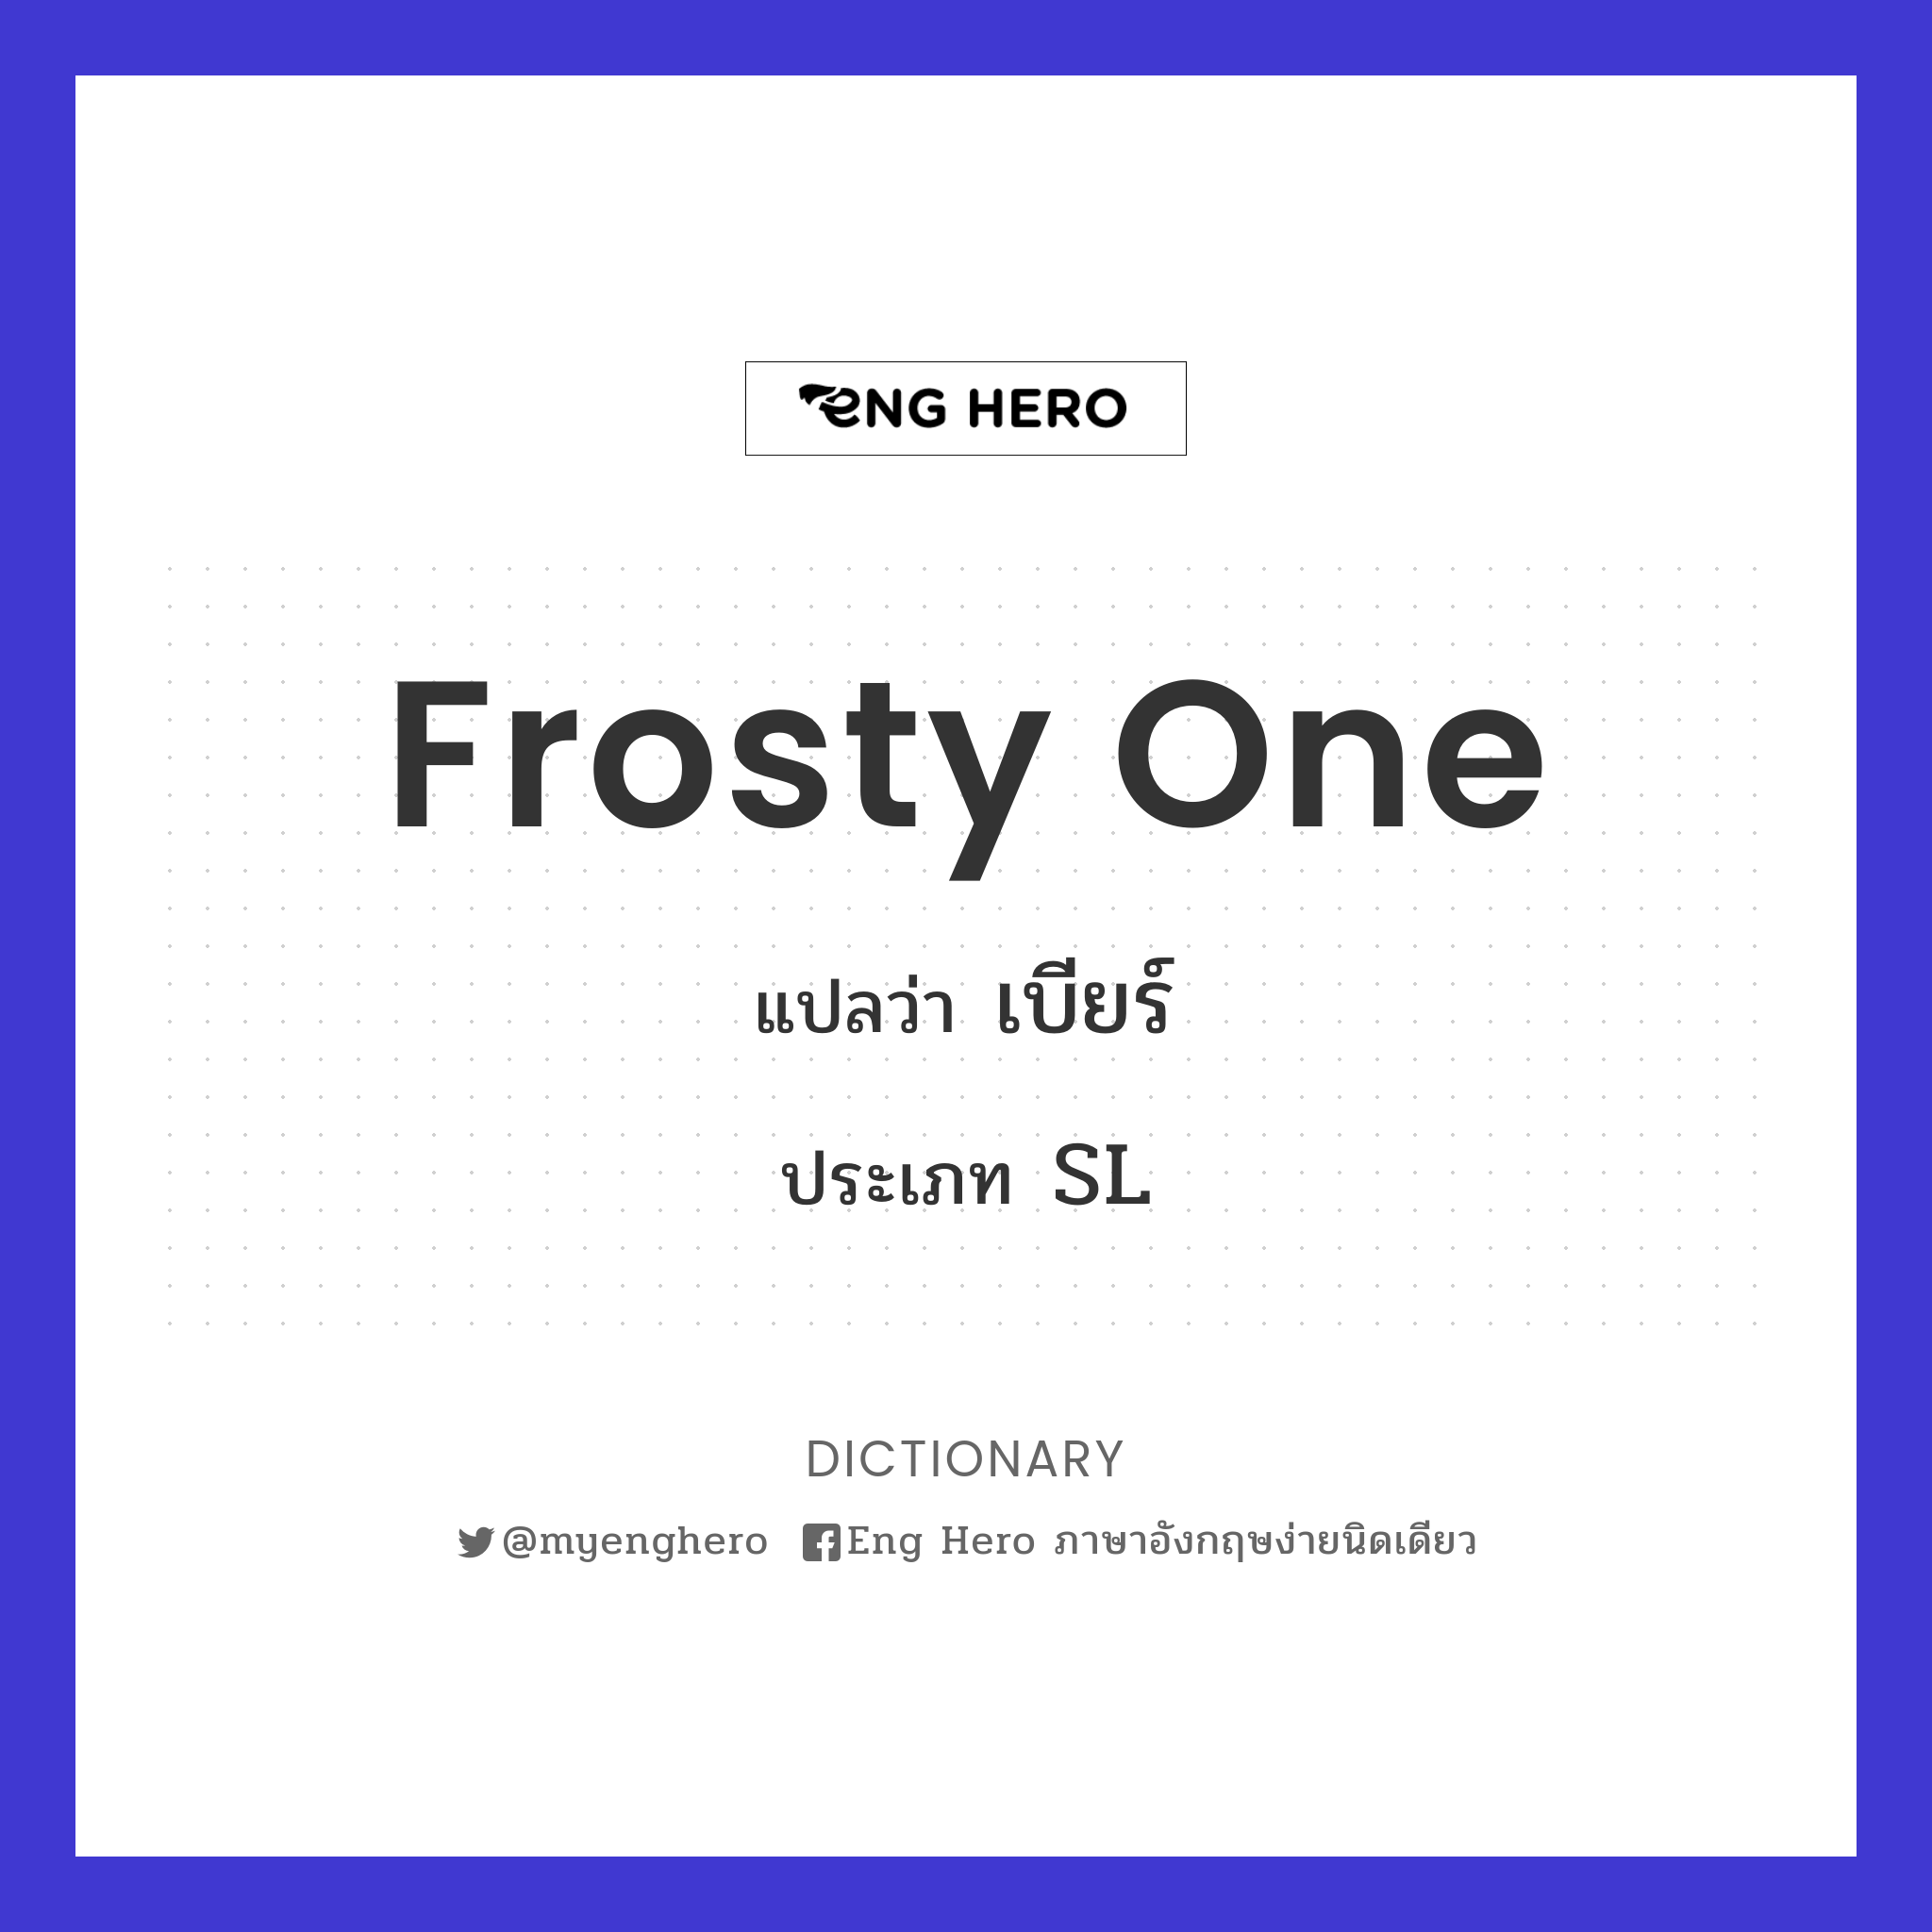 frosty one